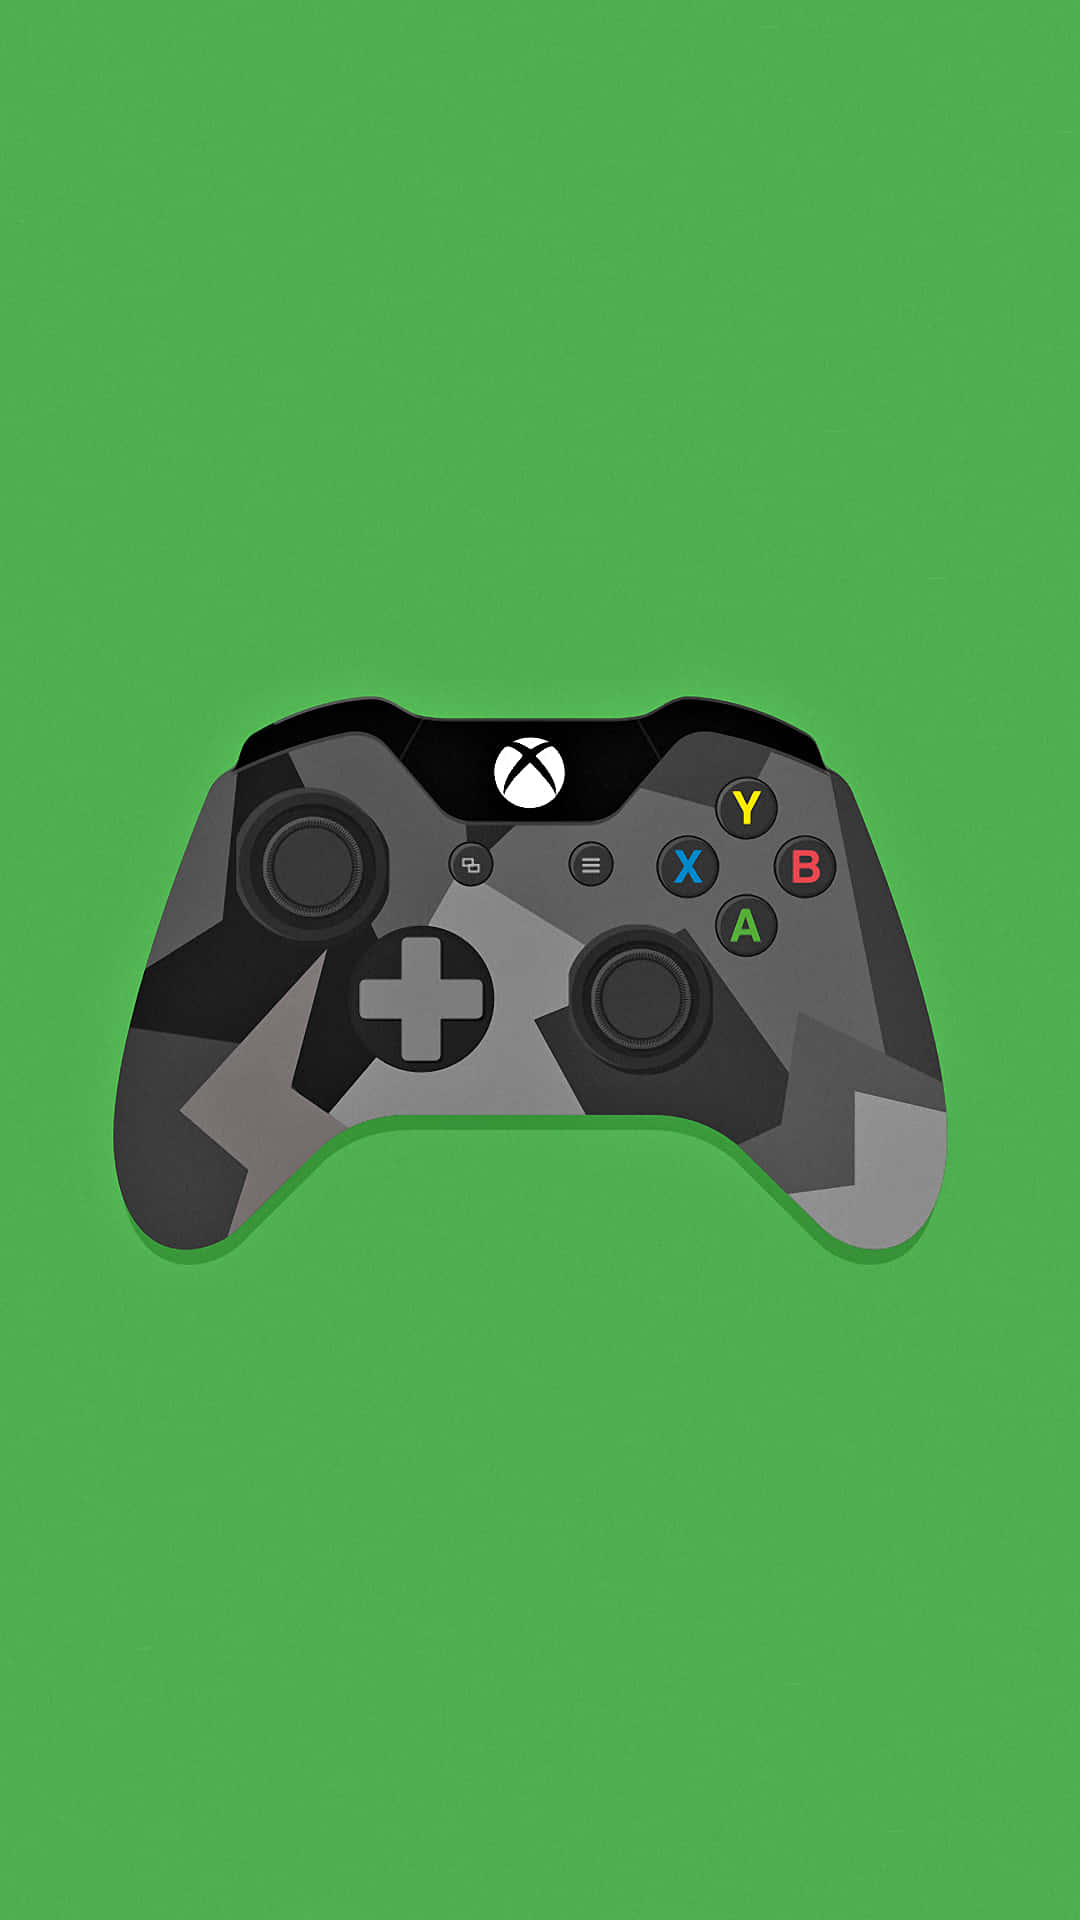 Controladordo Xbox One - Controlador Do Xbox One - Controlador Do Xbox One - Controlador Do Xbox One - Controlador Do Xbox One. Papel de Parede